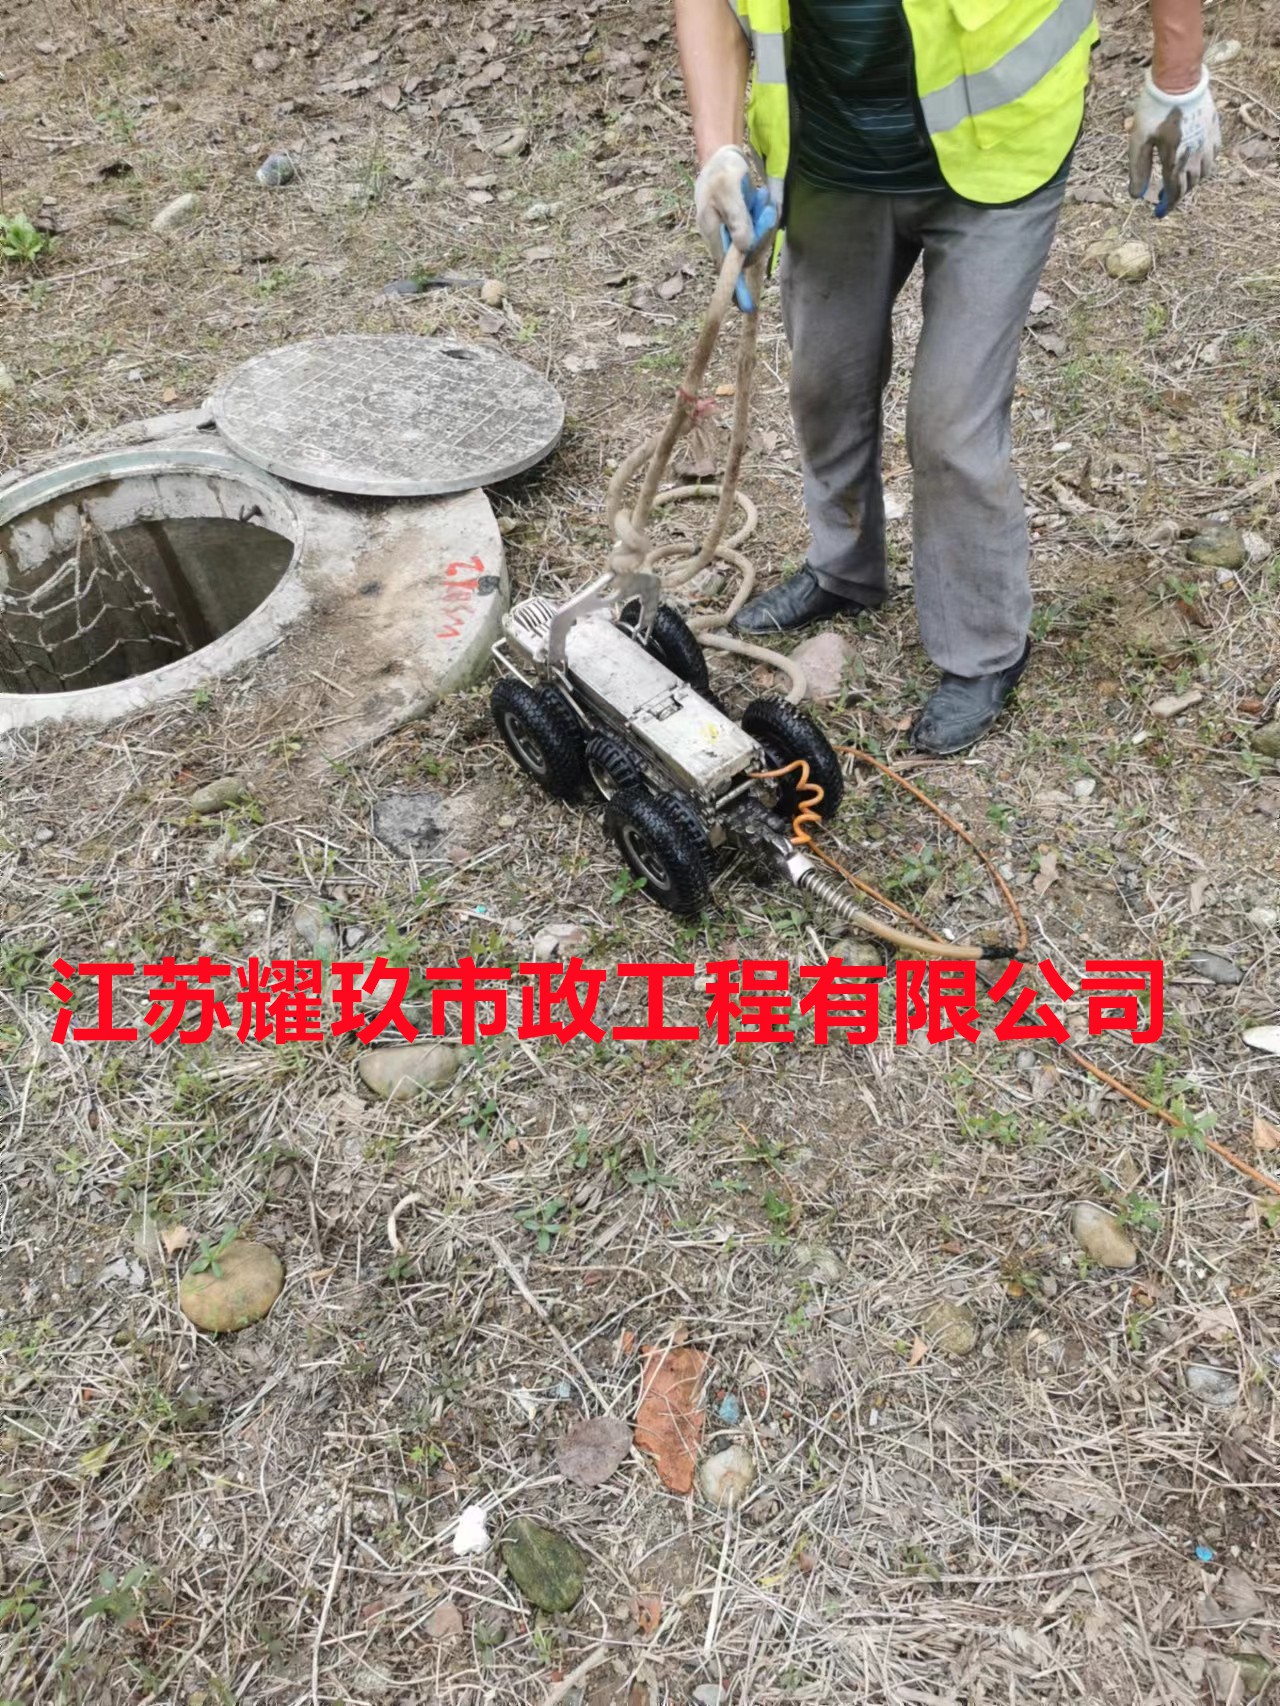 安徽省黄山市雨污混接管道检测改造公司